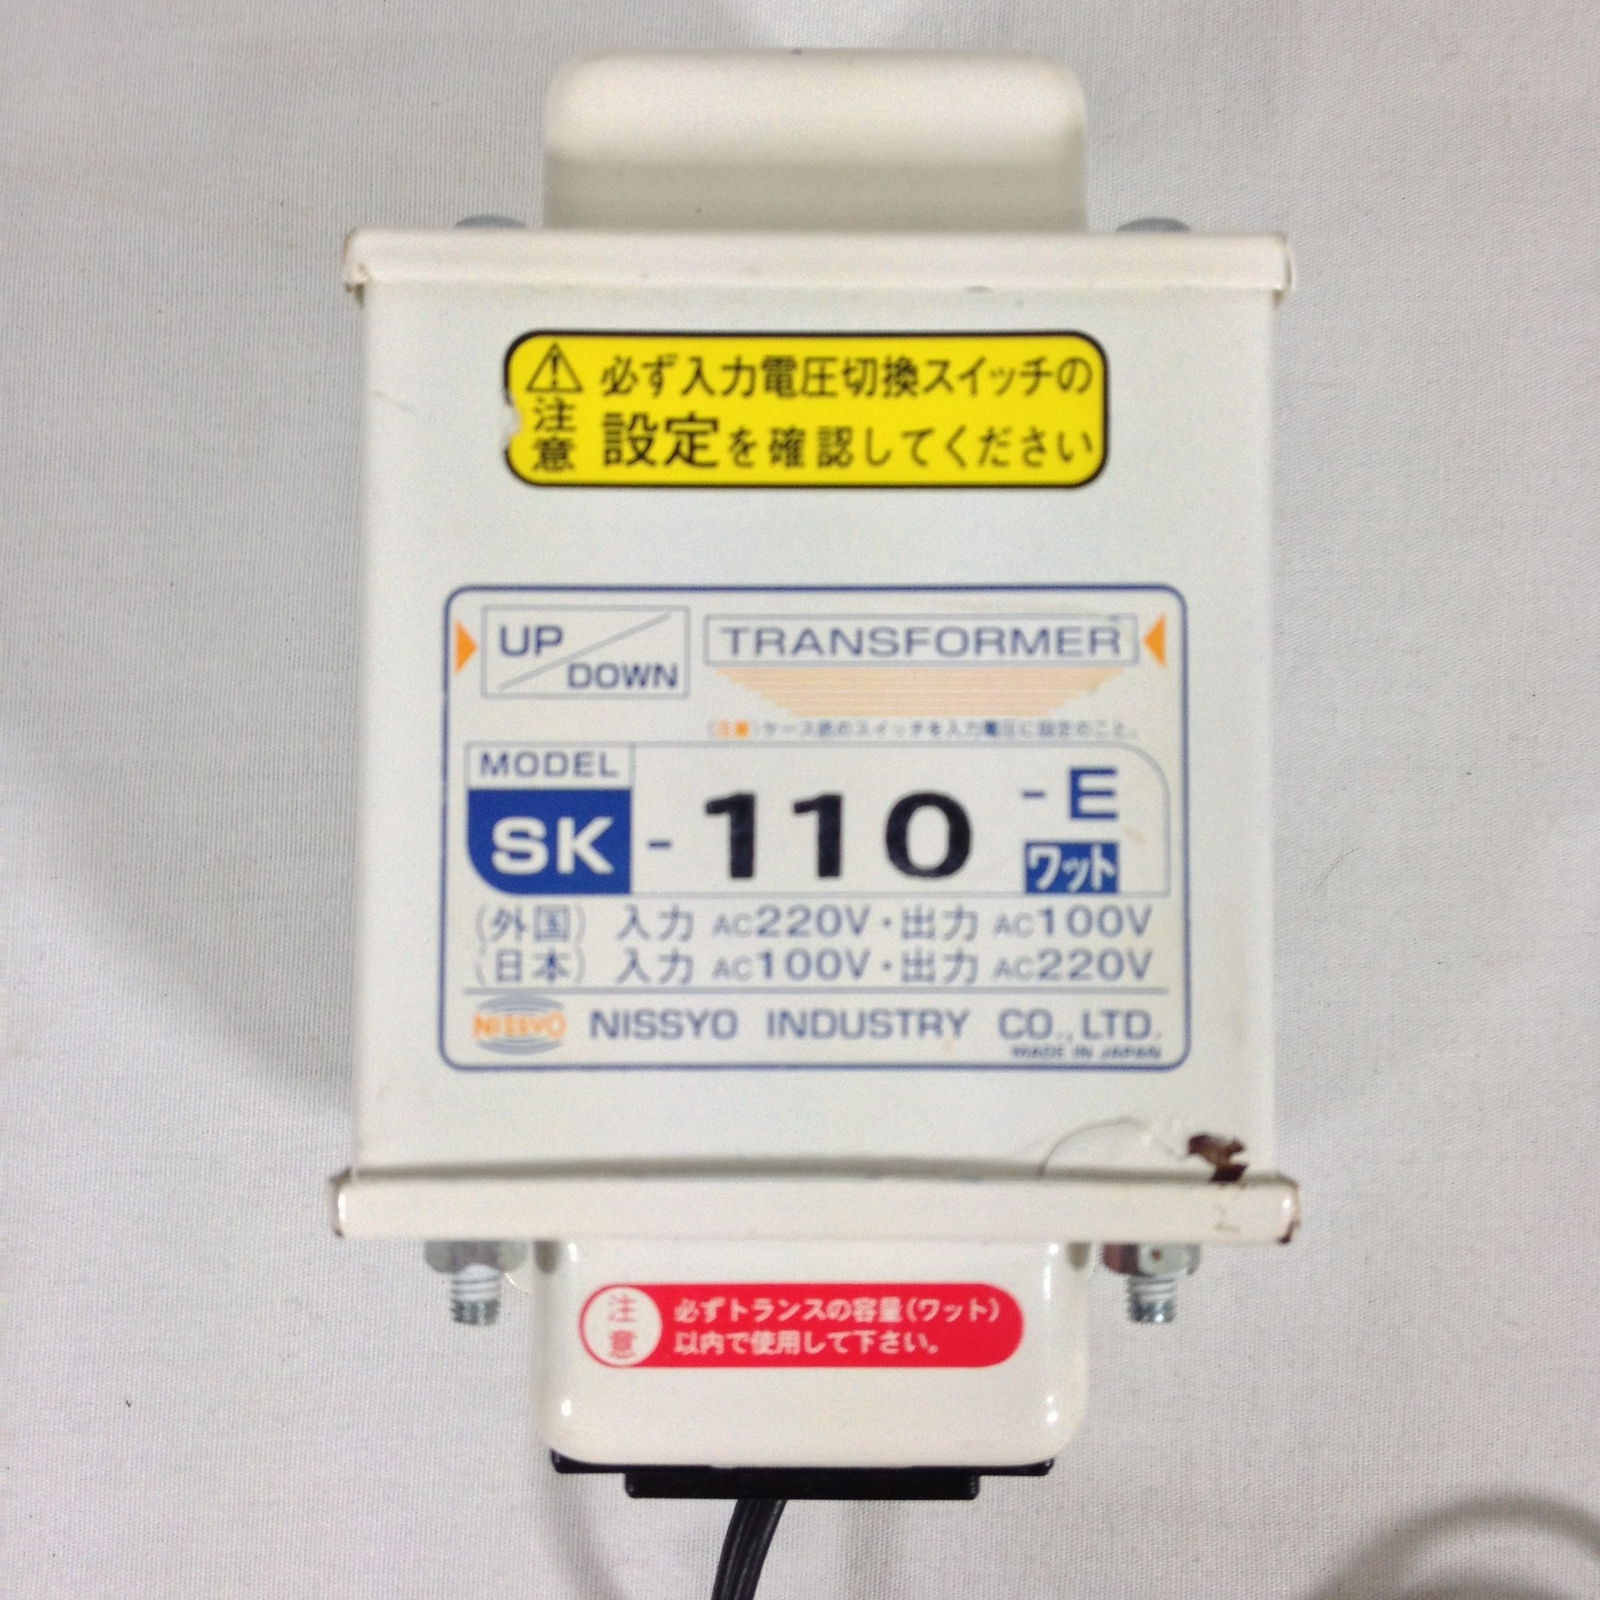 Primary image for NISSYO Industry Transformer SK-110-E Voltage UP & Down 220V ⇔ 100V Japan